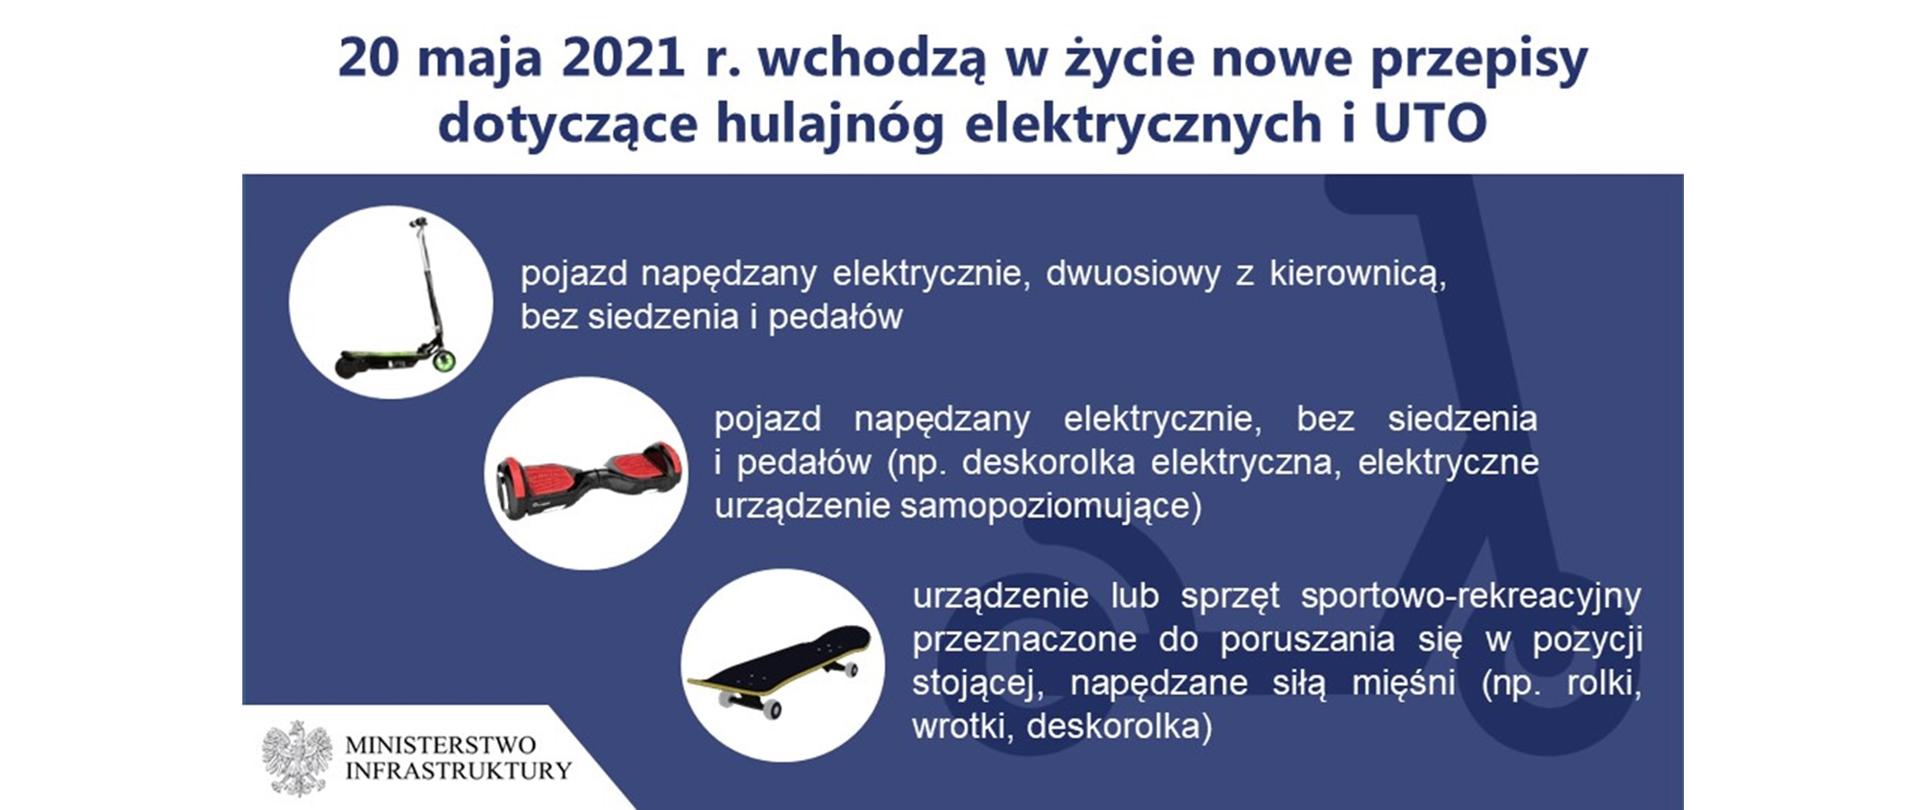 Od 20 maja 2021 r. nowe przepisy dla użytkowników urządzeń transportu osobistego i hulajnóg elektrycznych